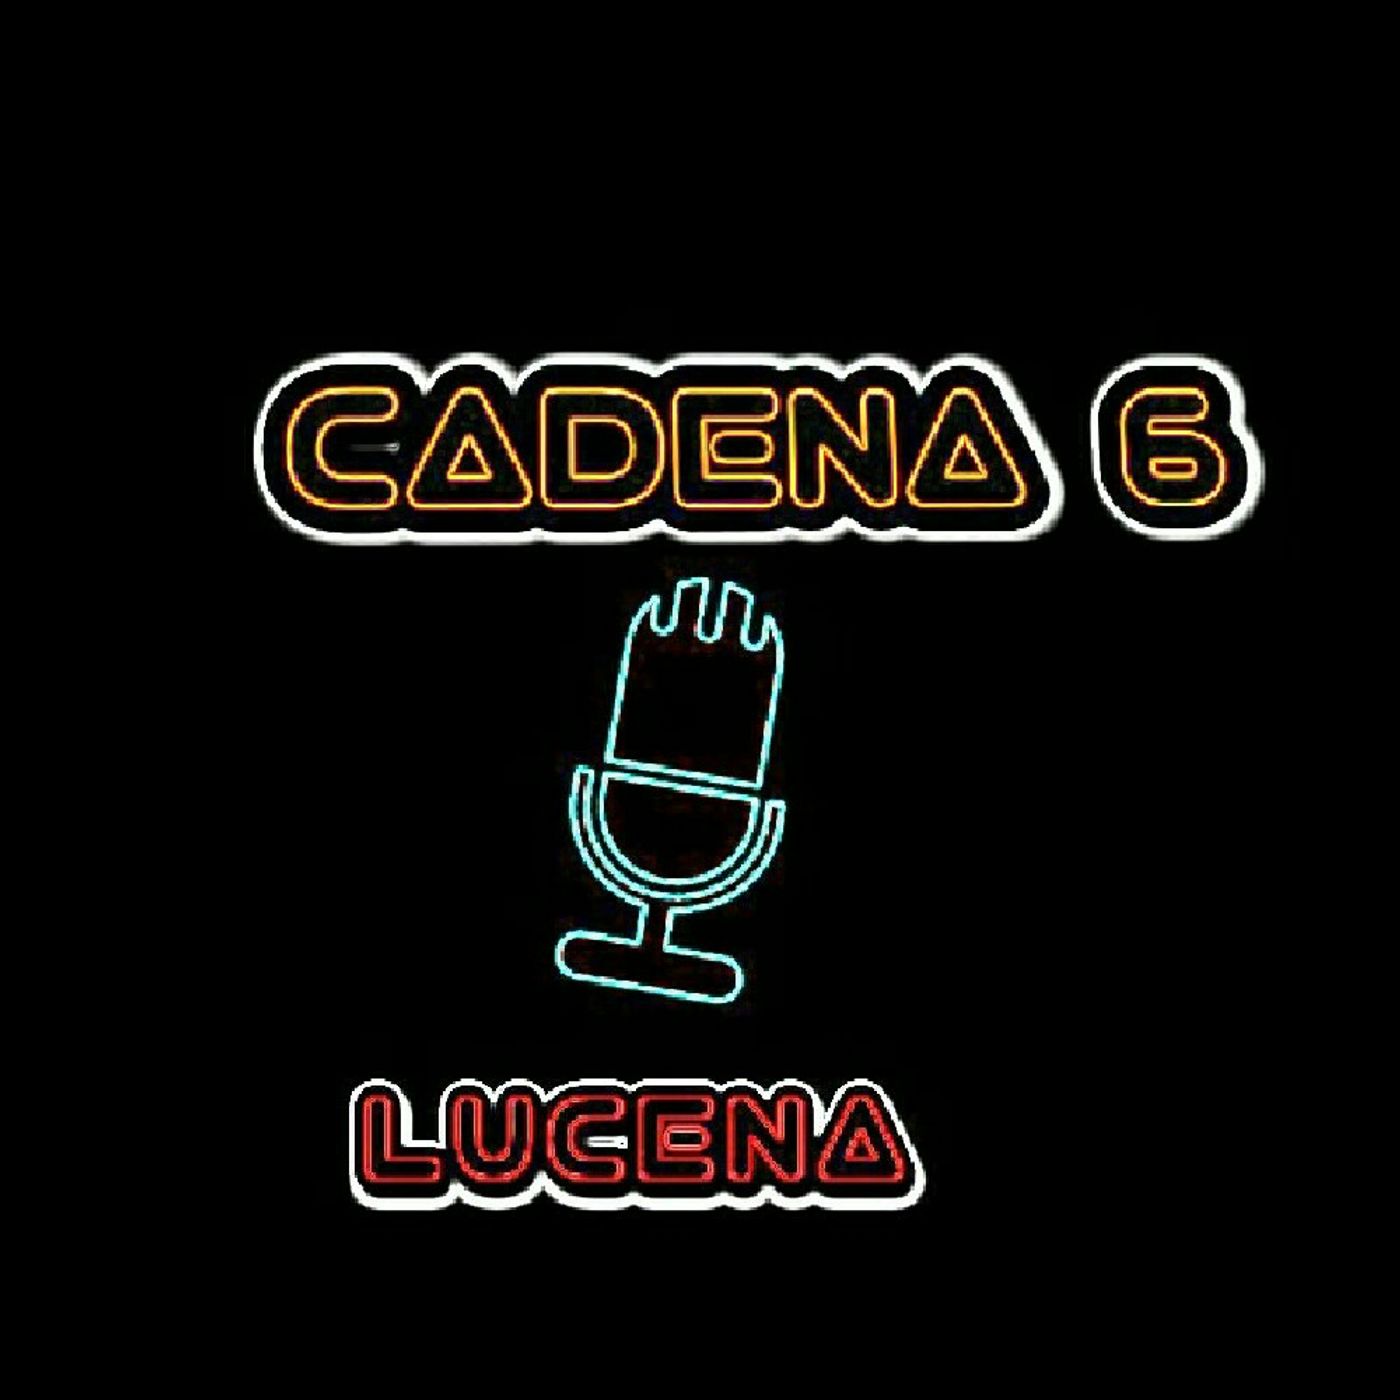 Cadena 6